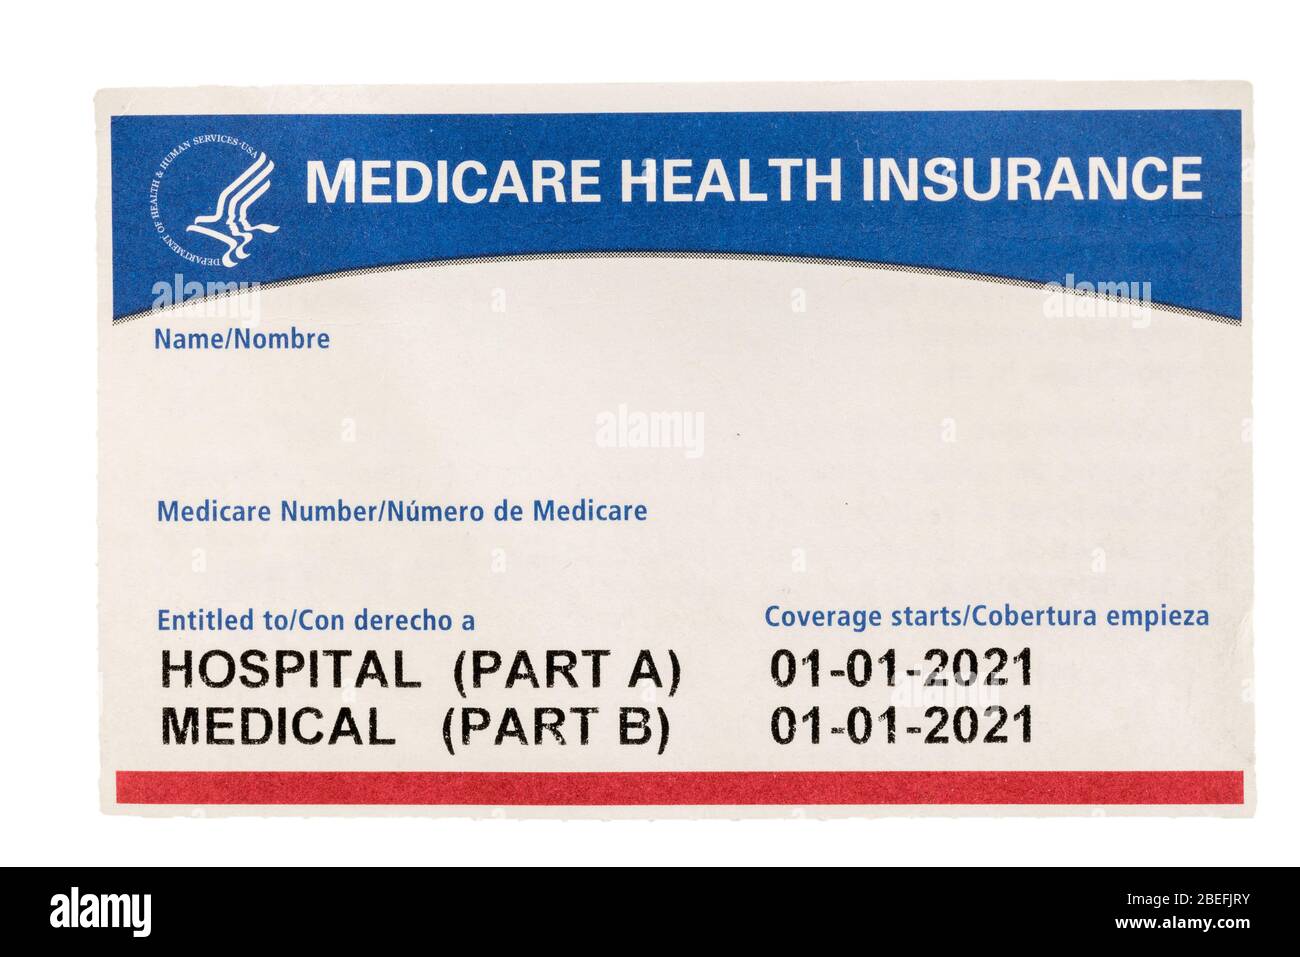 Carte d'assurance médicale américaine vierge et vide non remplie isolée sur fond blanc Banque D'Images